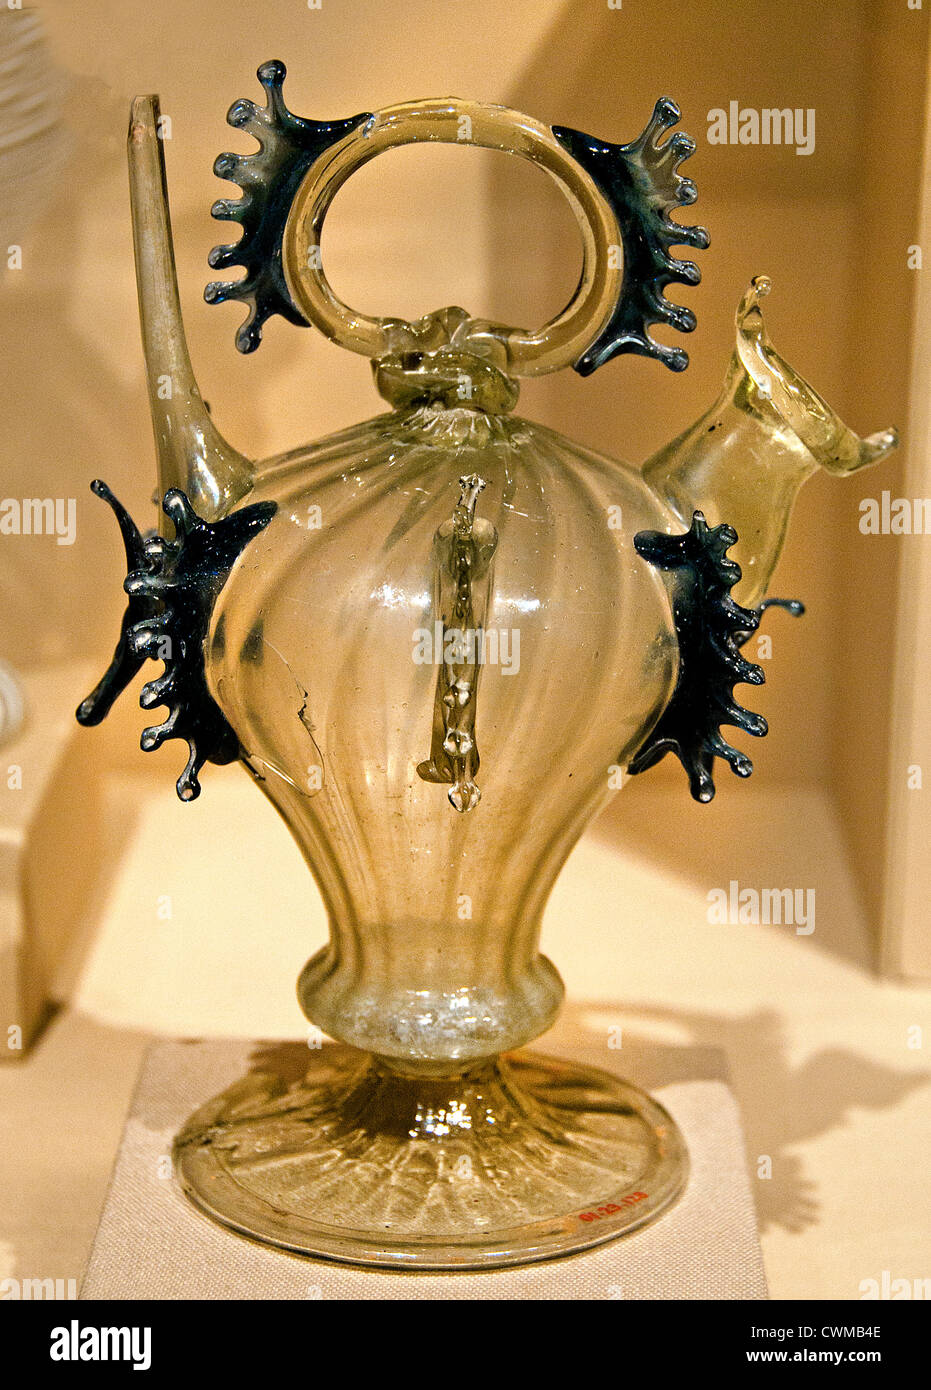 Vaso de Agua Càntir español del siglo XVIII Cataluña España 18 cm de vidrio Foto de stock